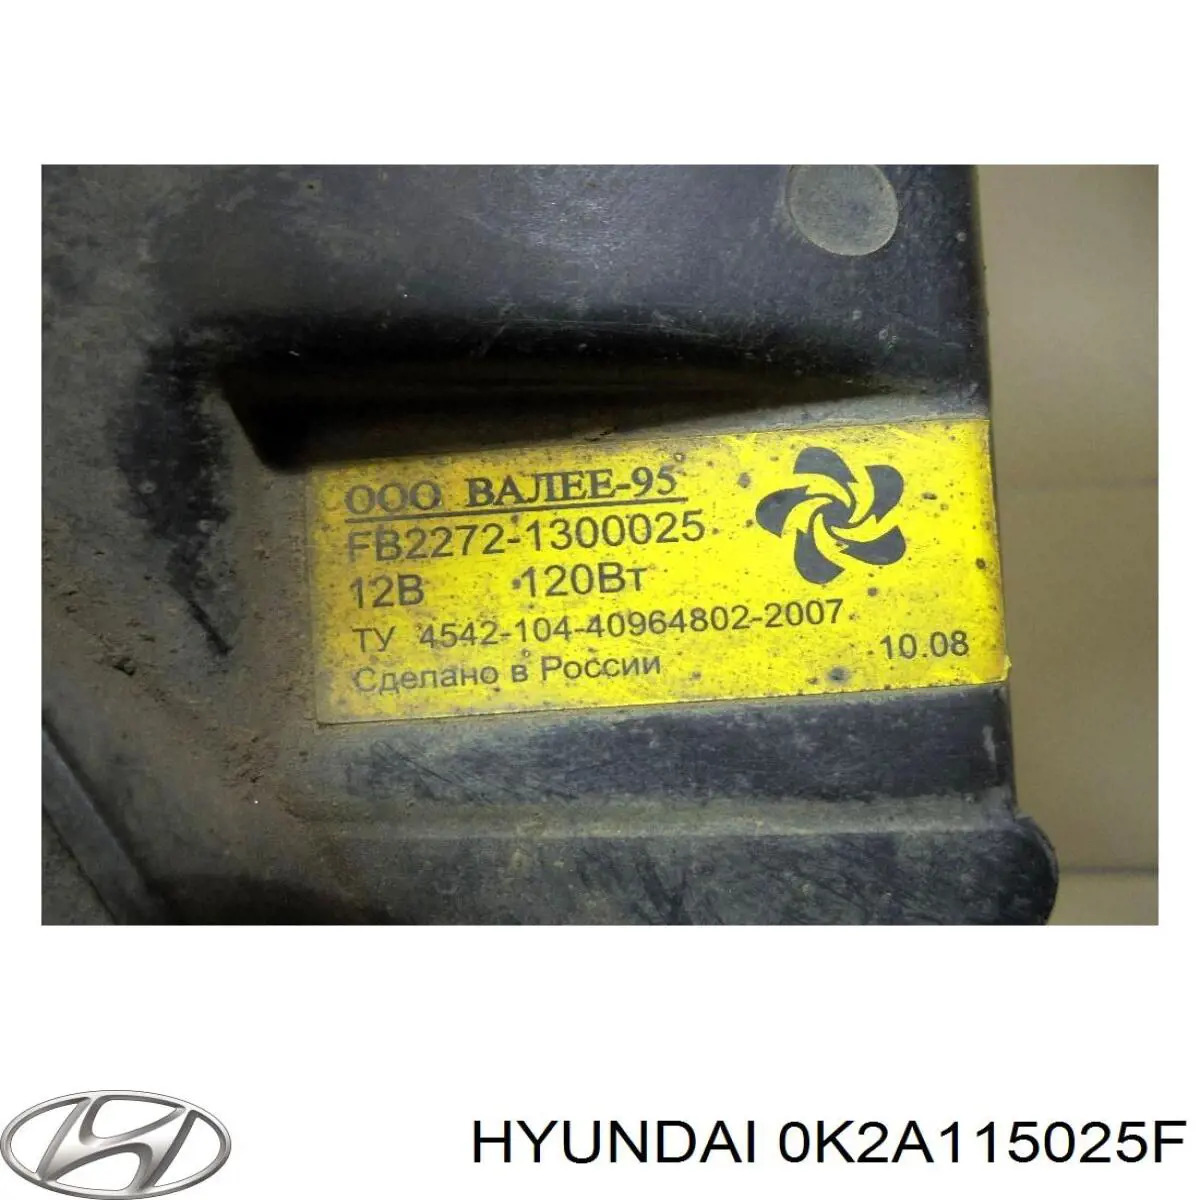 0K2A115025D Hyundai/Kia difusor de radiador, ventilador de refrigeración, condensador del aire acondicionado, completo con motor y rodete